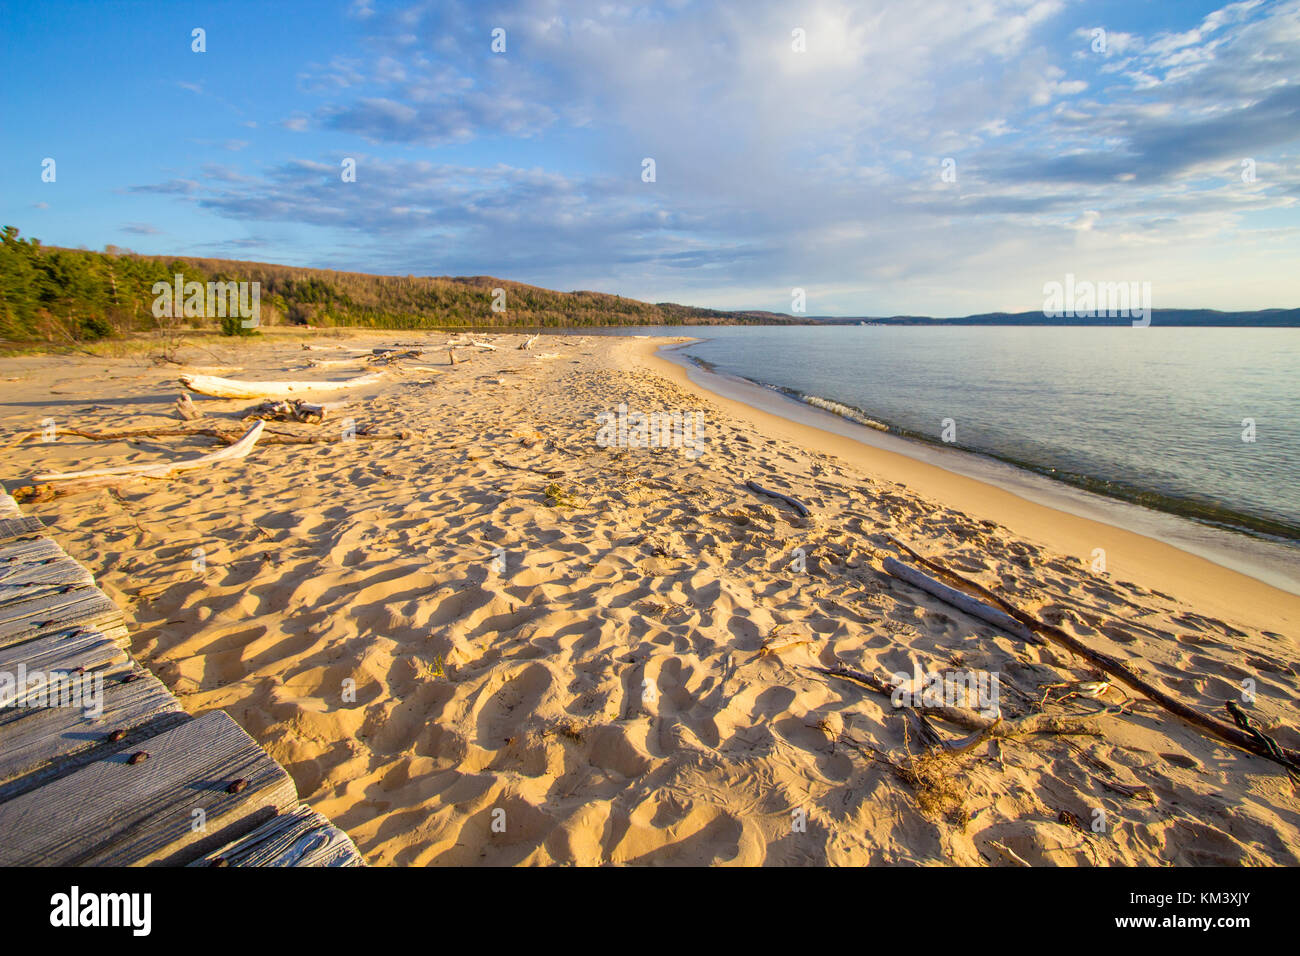 Estate Spiaggia Panorama. Ampia spiaggia di sabbia sulle rive del Lago Superiore su una soleggiata giornata estiva in Pictured Rocks National Lakeshore nel Michigan. Foto Stock